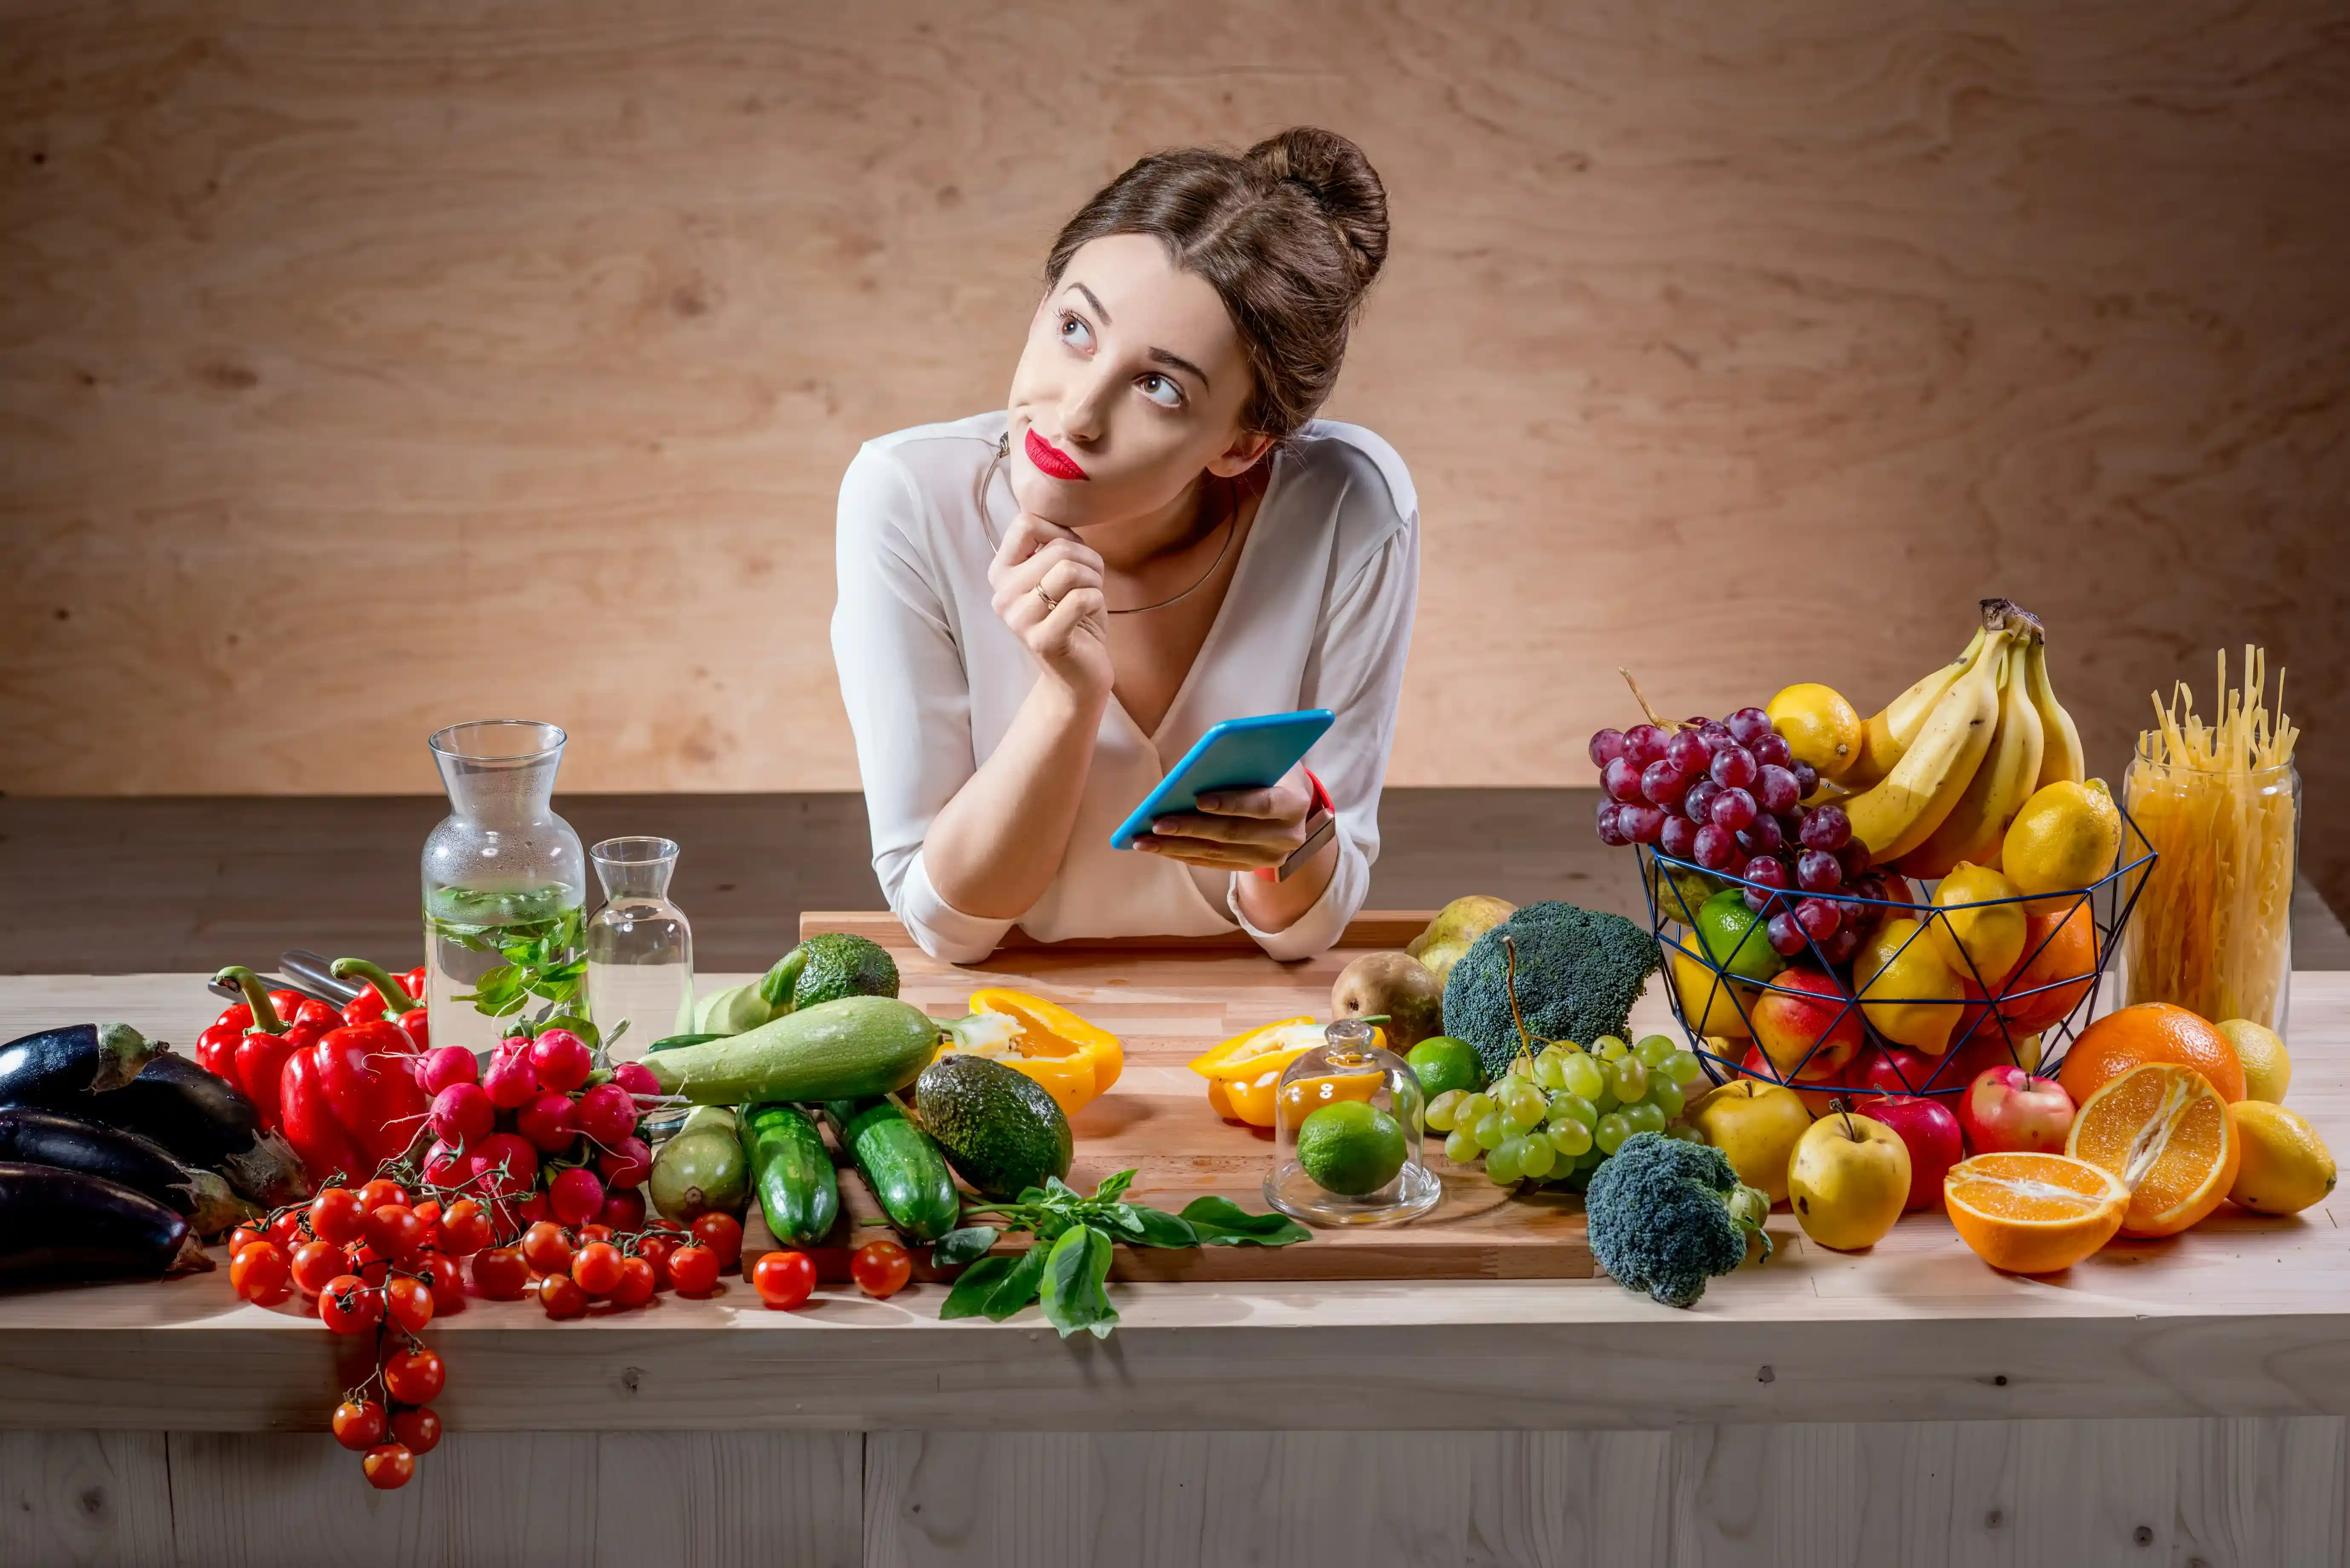 Считать обед. Еда на женщине. Фотосессия с овощами и фруктами. Здоровое питание женщина. Женщина ест овощи и фрукты.